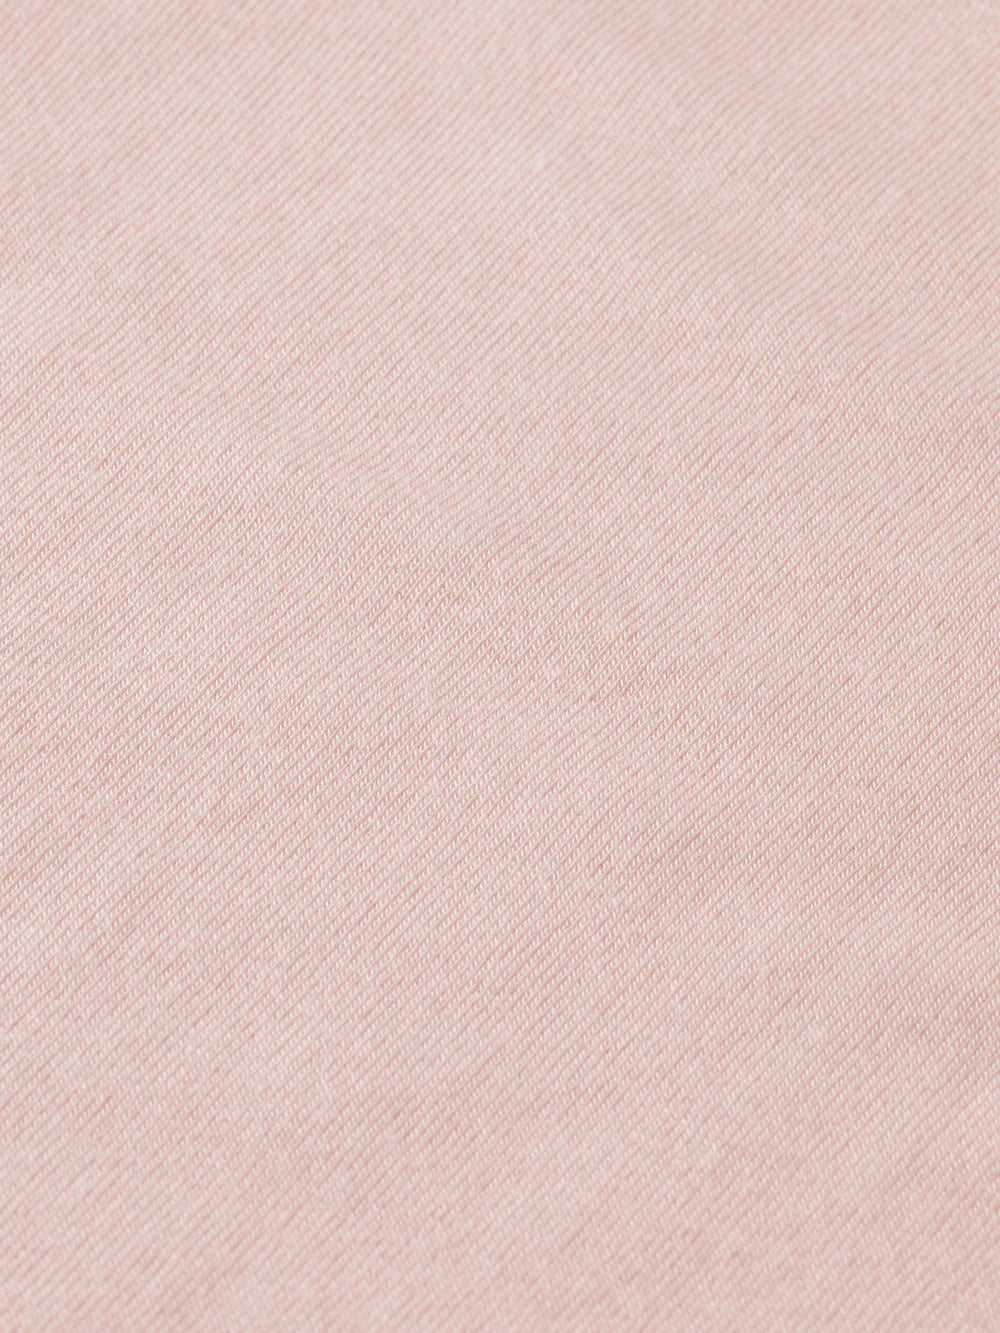 Turtle Neck Longsleeve Top - Pale Pink 174833